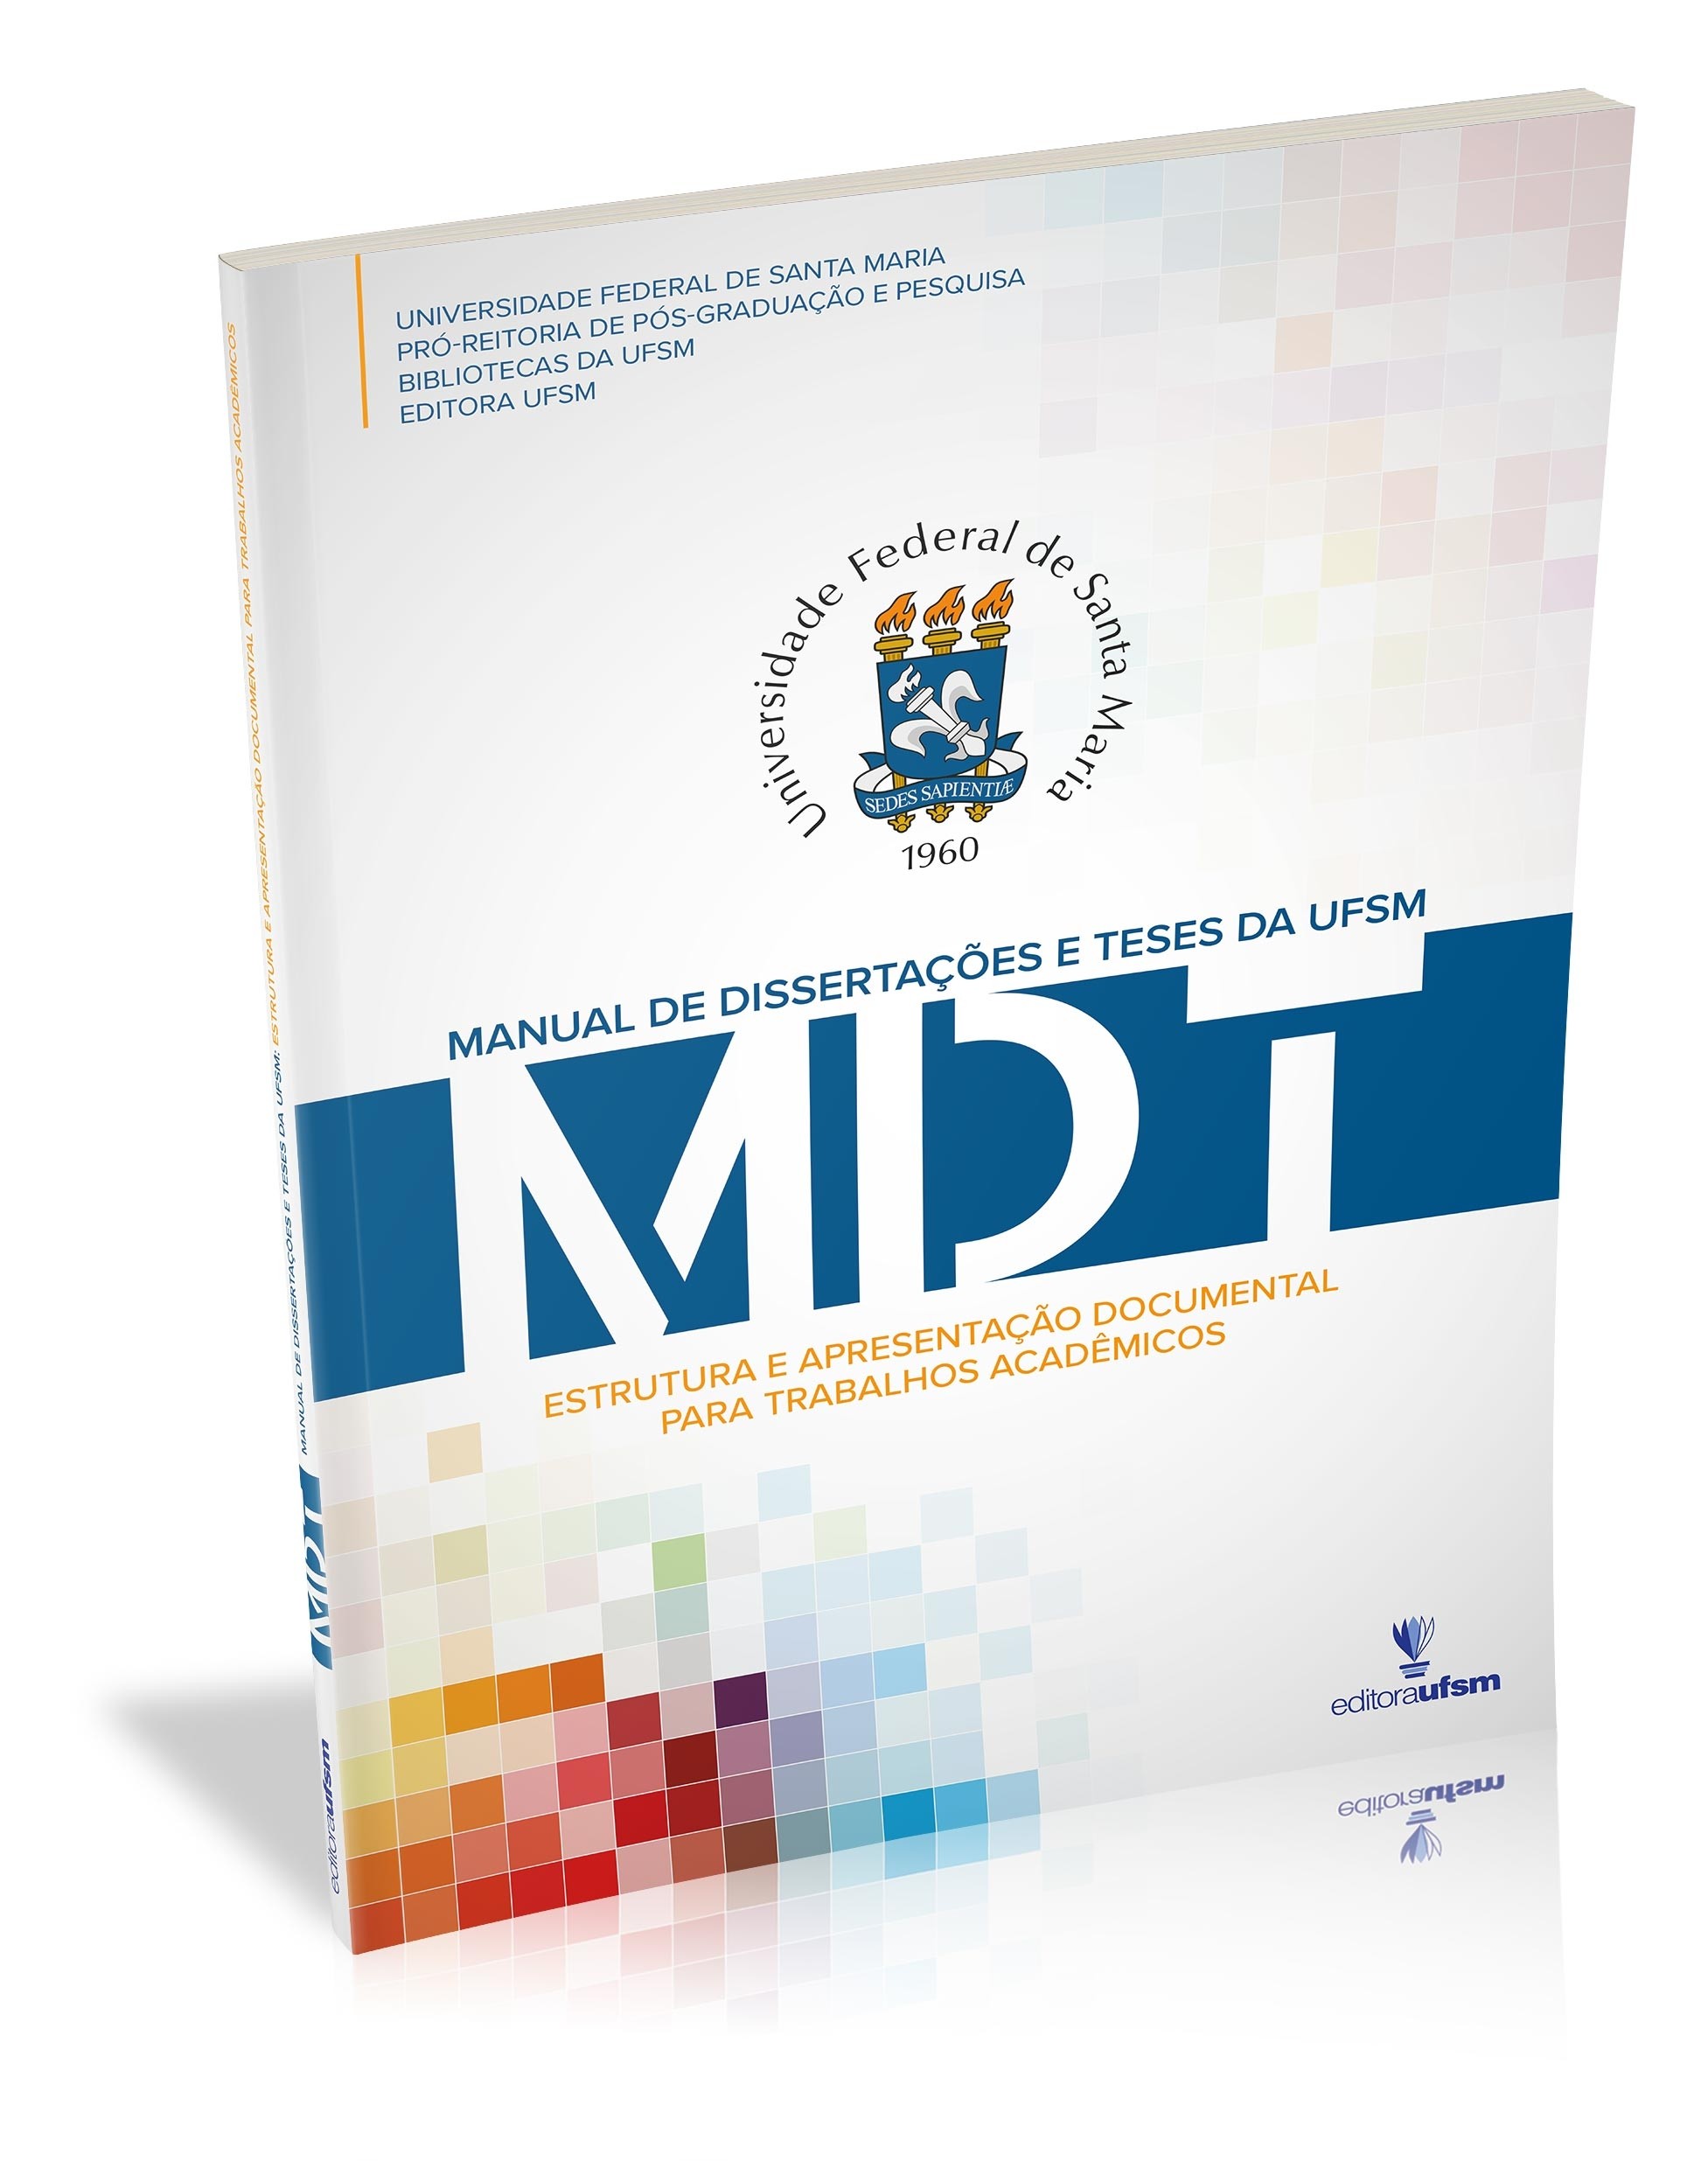 Capa do livro Manual de Dissertações e Teses da UFSM - MDT